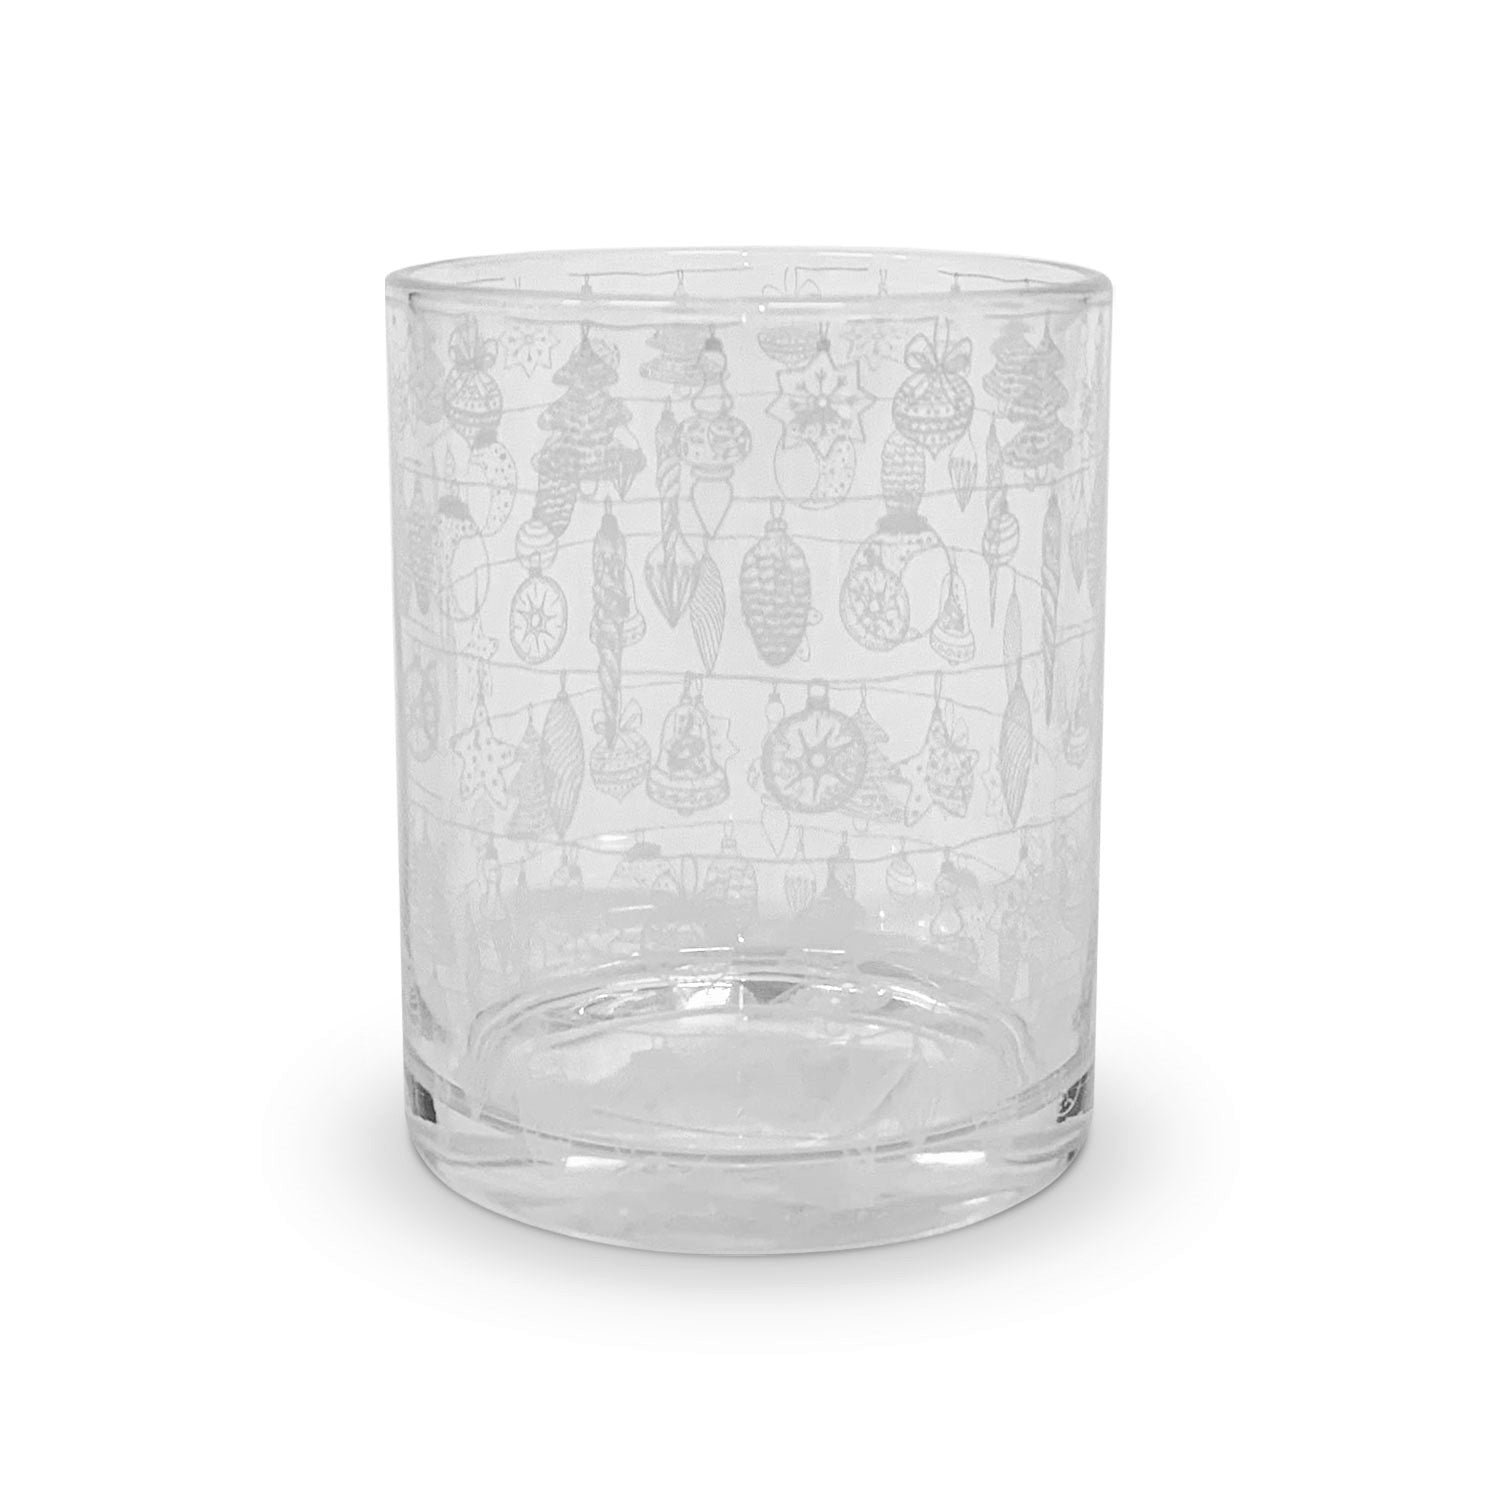 Bicchieri da acqua natalizi Nuvole di Stoffa in vetro con decori natale 6pz 5713